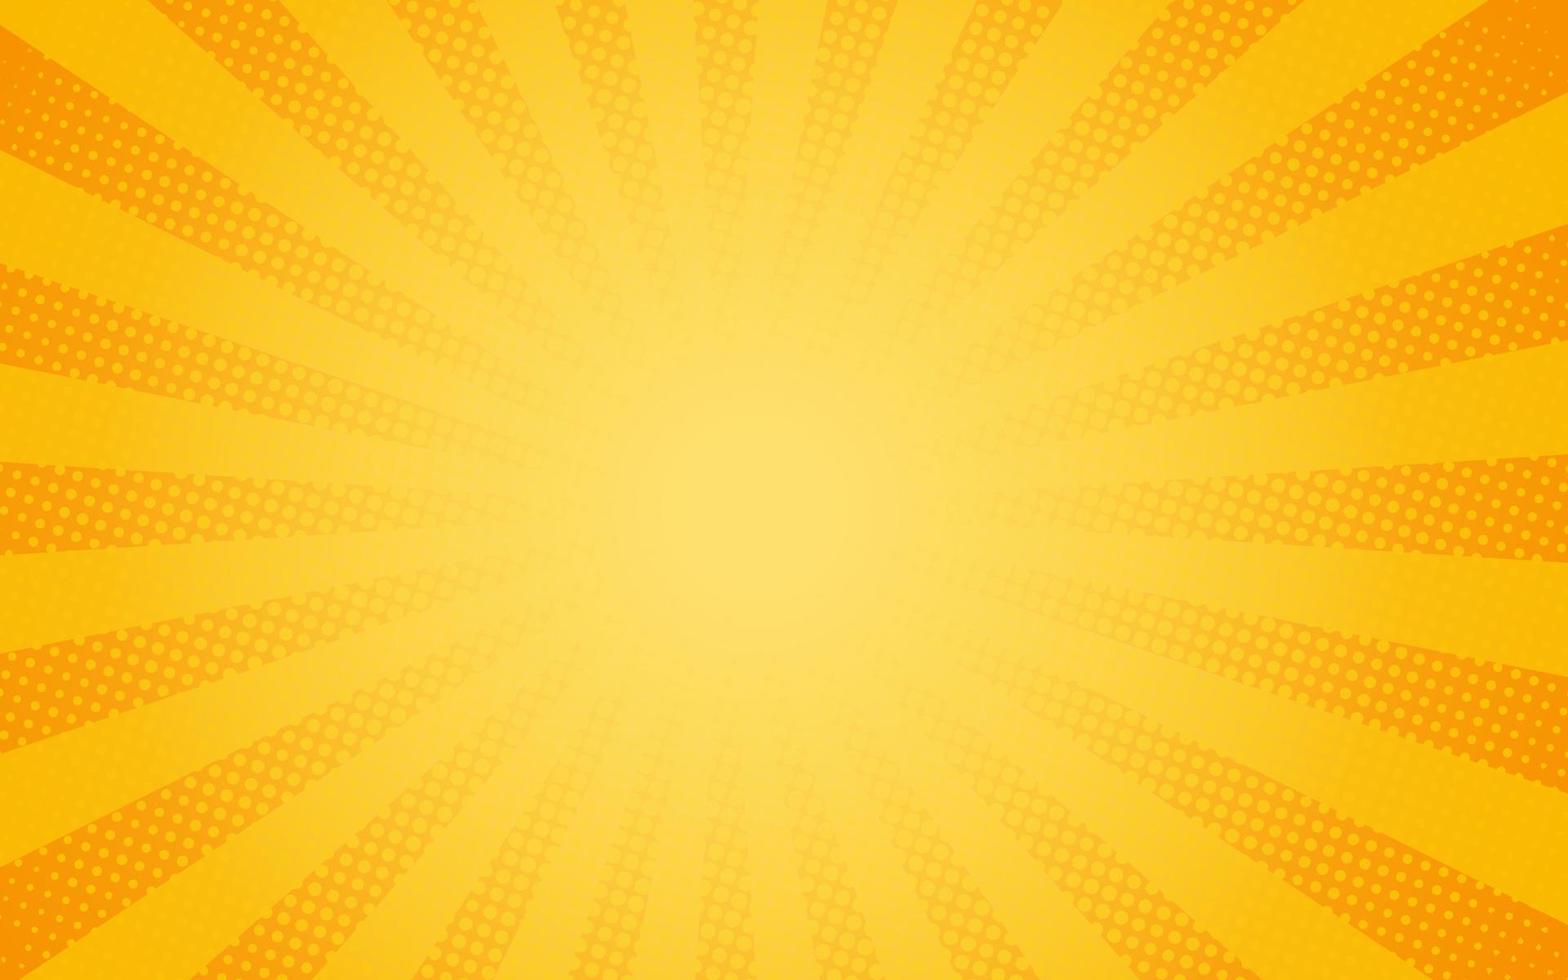 zonnestralen retro vintage stijl op gele en oranje achtergrond, komische patroon met starburst en halftoon. cartoon retro zonnestraaleffect met stippen. stralen. zomer banner vectorillustratie vector